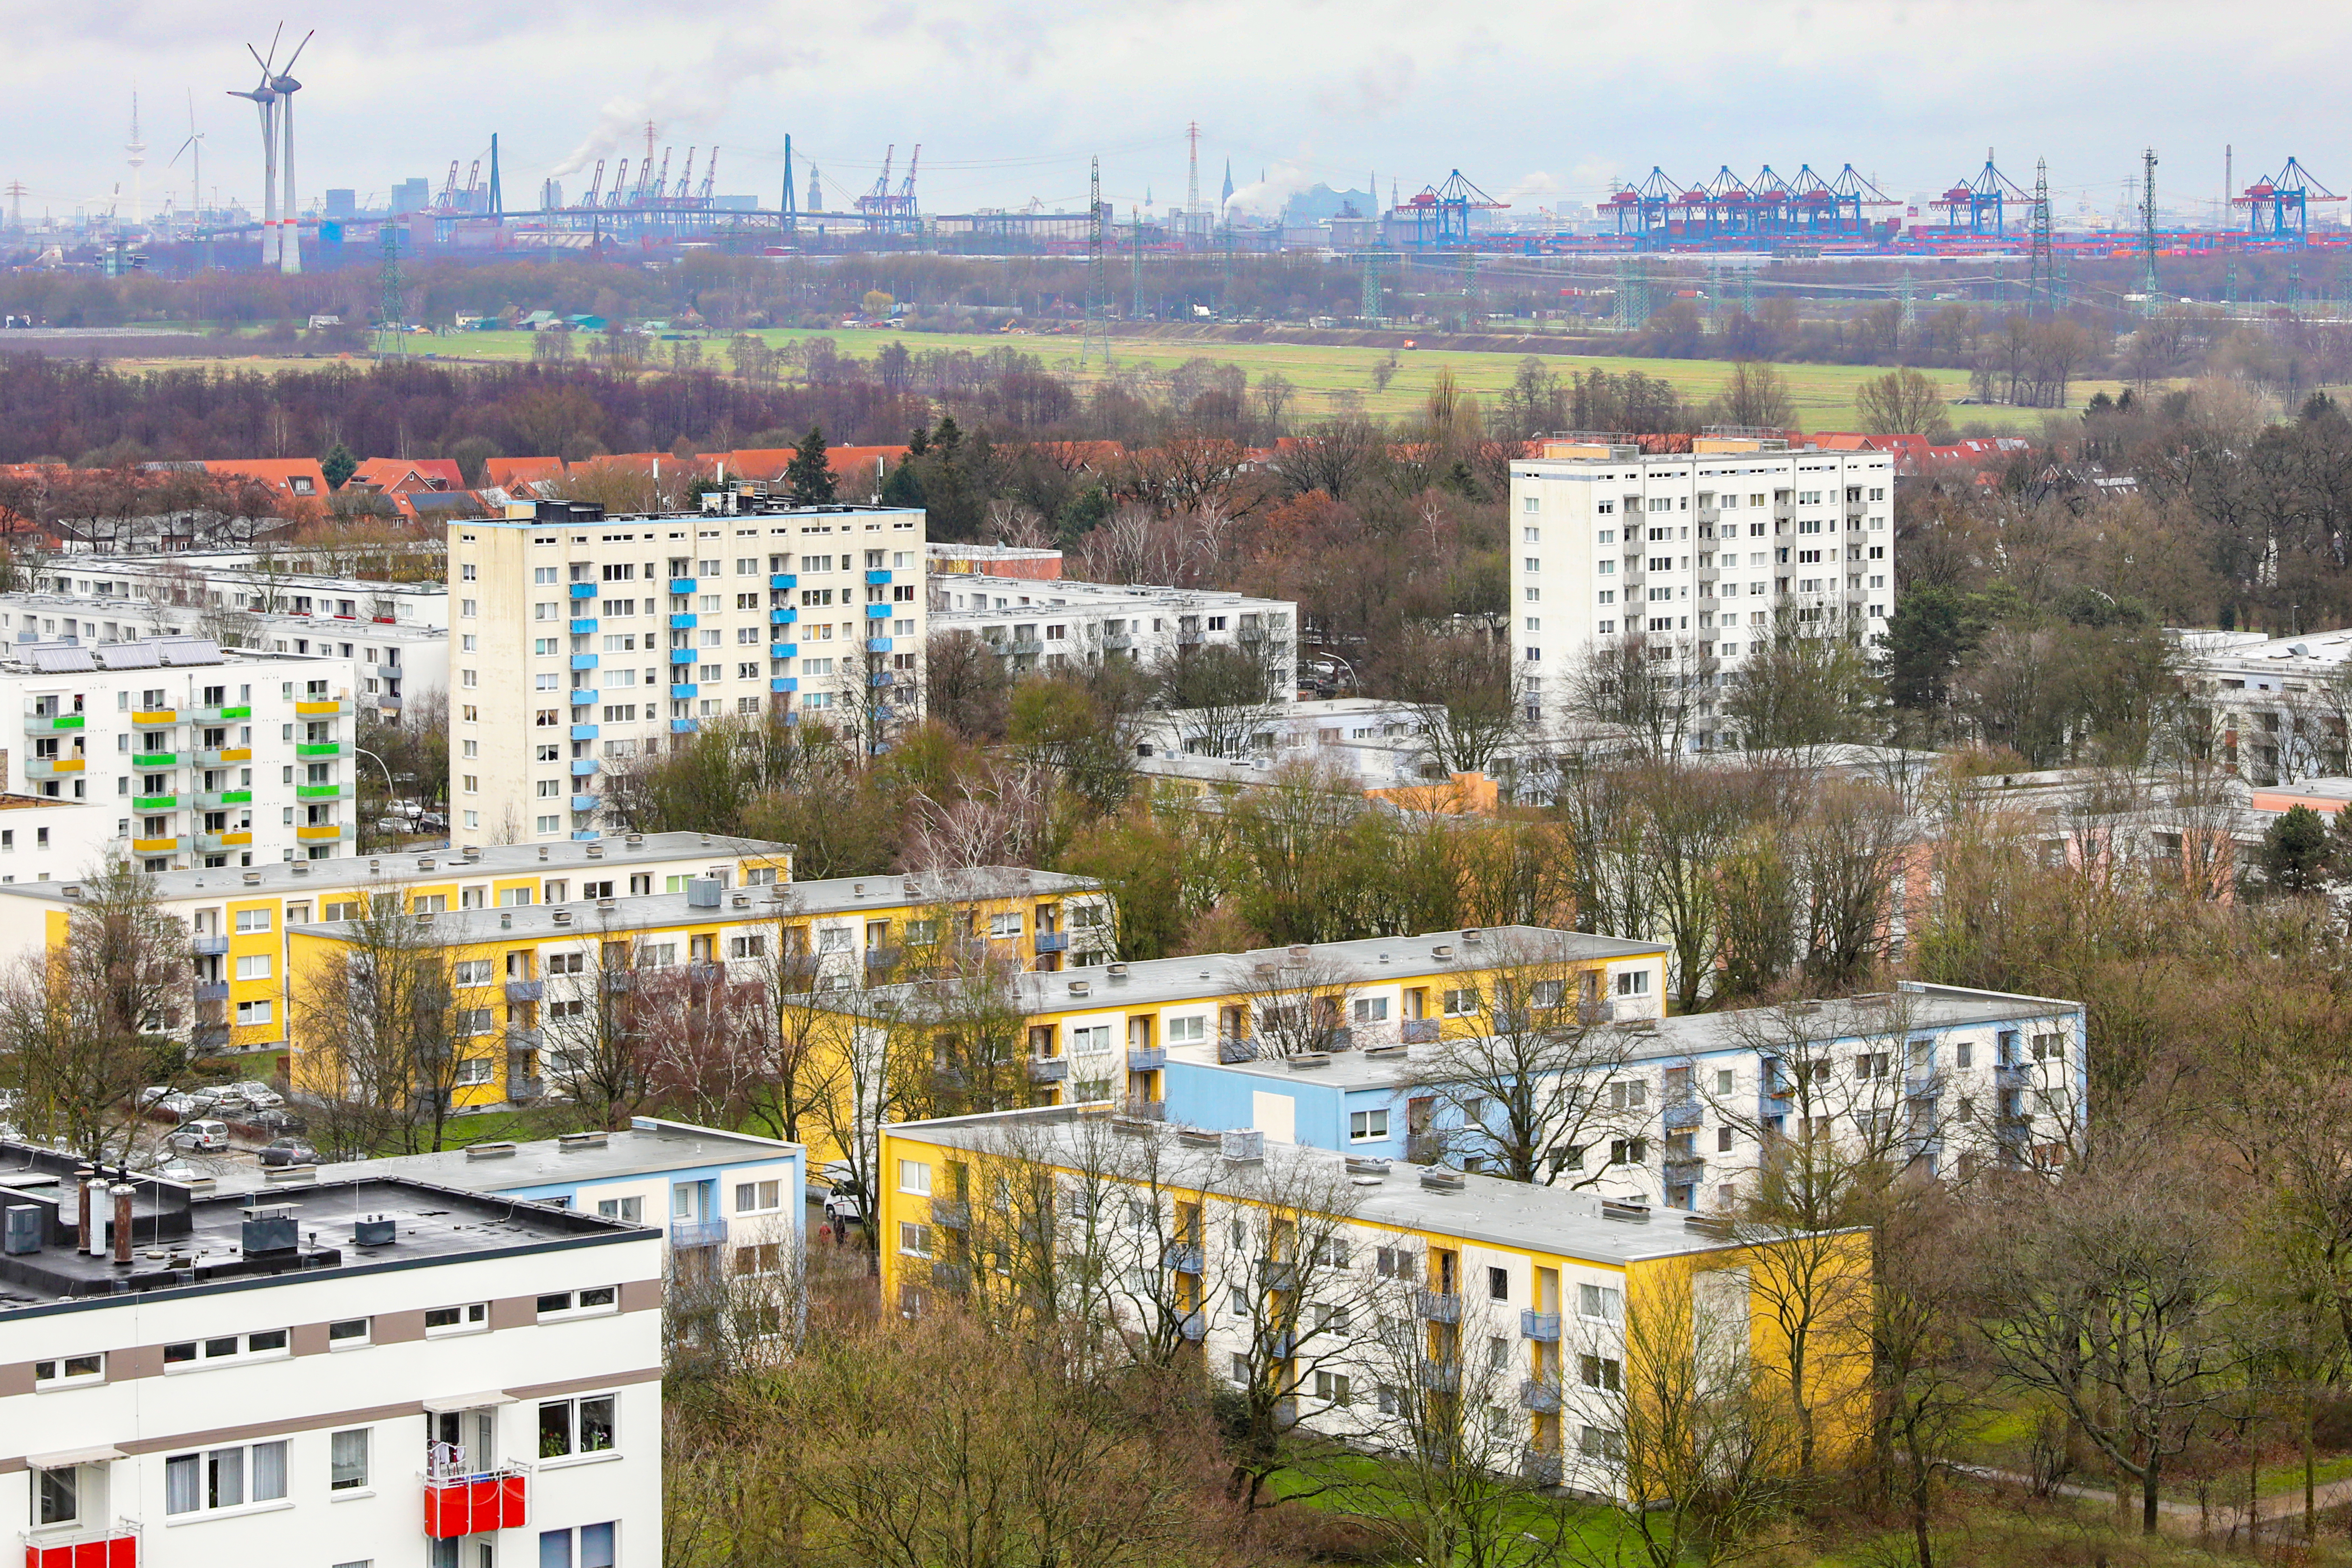 Luftaufnahme von einem Wohnquartier mit Mehrfamilienhäusern mit gelber und blauer Fassade, im Hintergrund Kräne vom Hamburger Hafen. 